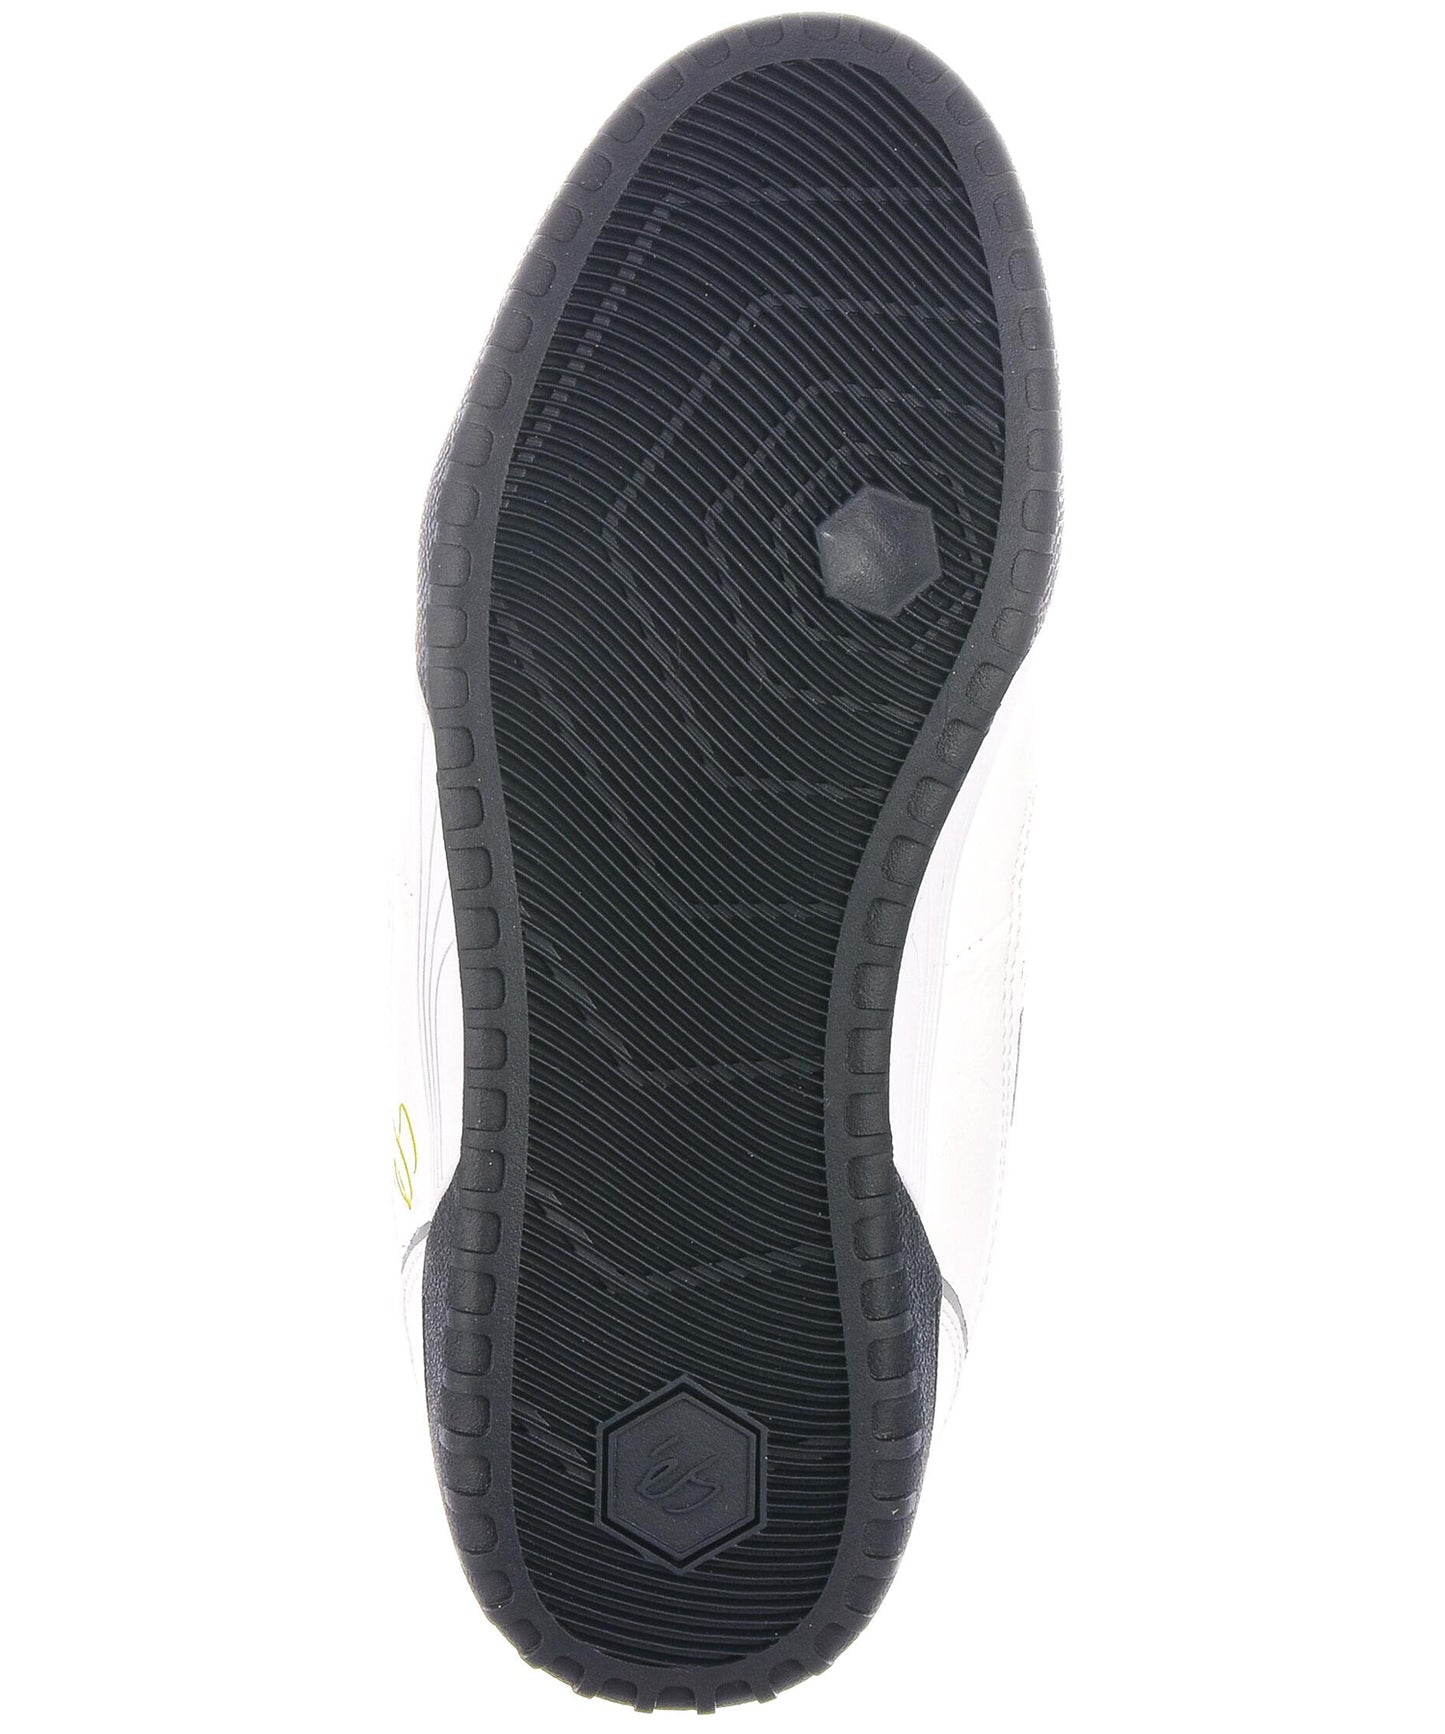 és-zapatillas-silo-sc-white-la zapatilla de skate definitiva-suelas y lengüeta de espuma-Suela de goma sti energy-cuero sintético-totalmente vegano.